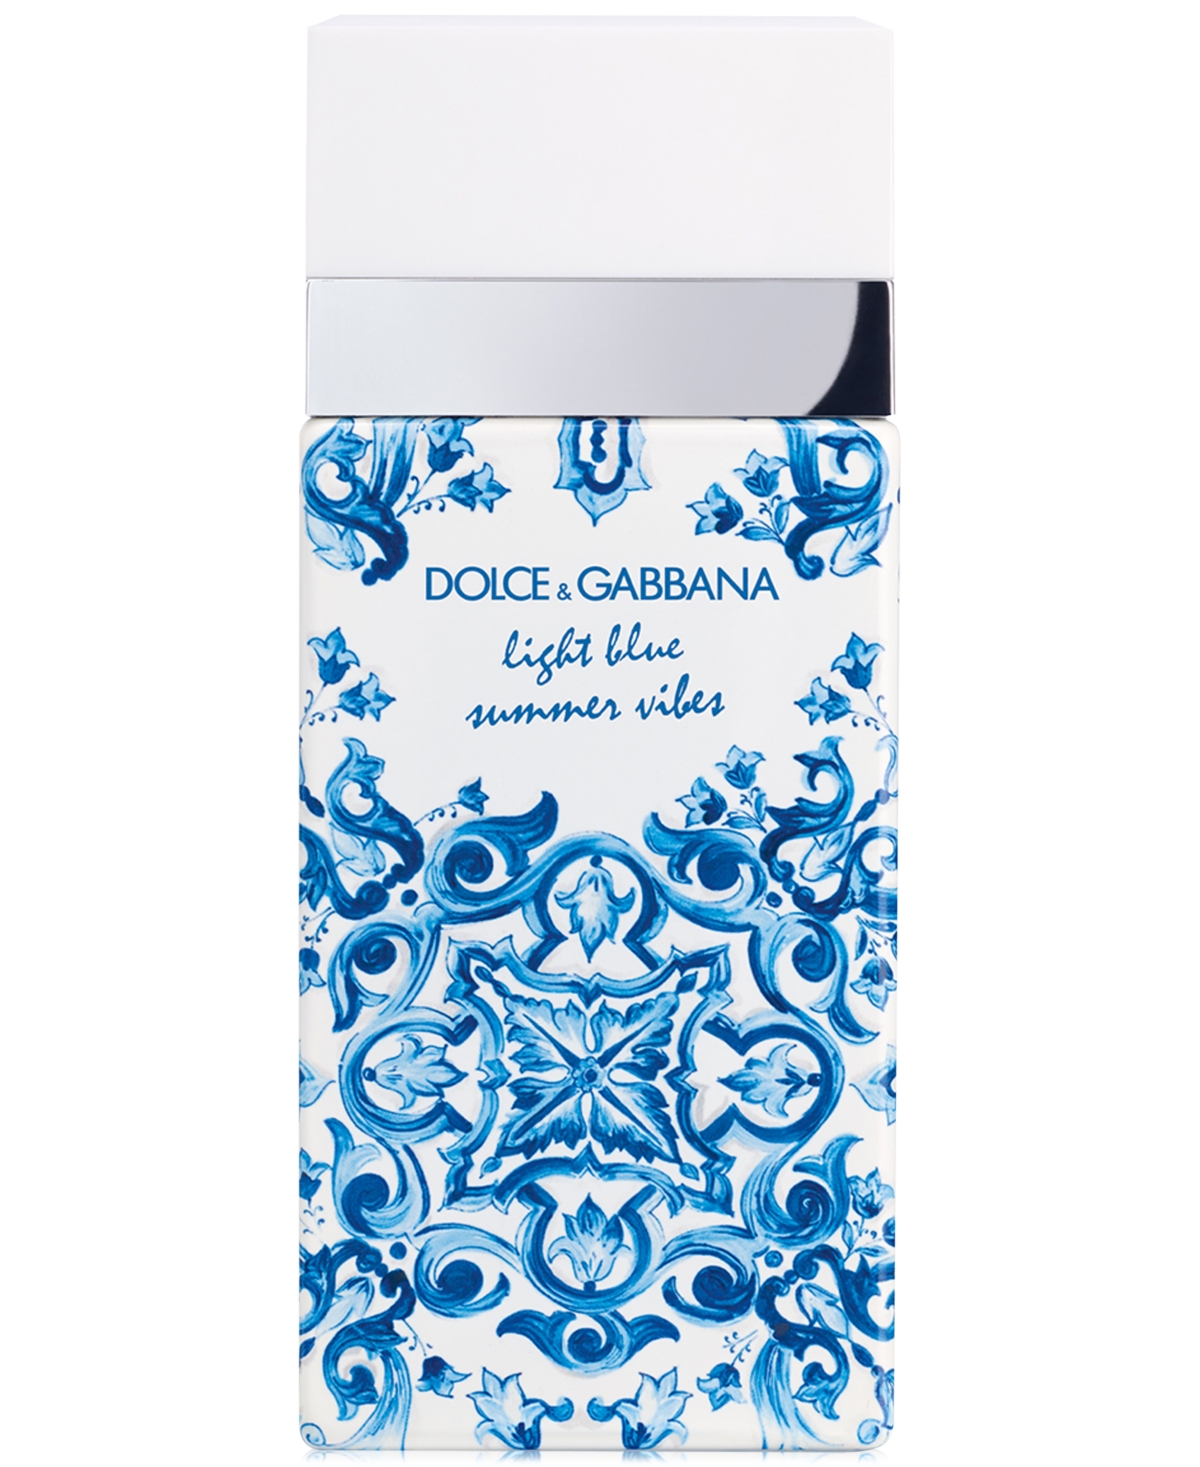 Dolce&Gabbana Light Blue Summer Vibes Eau de Toilette, 1.6 oz.